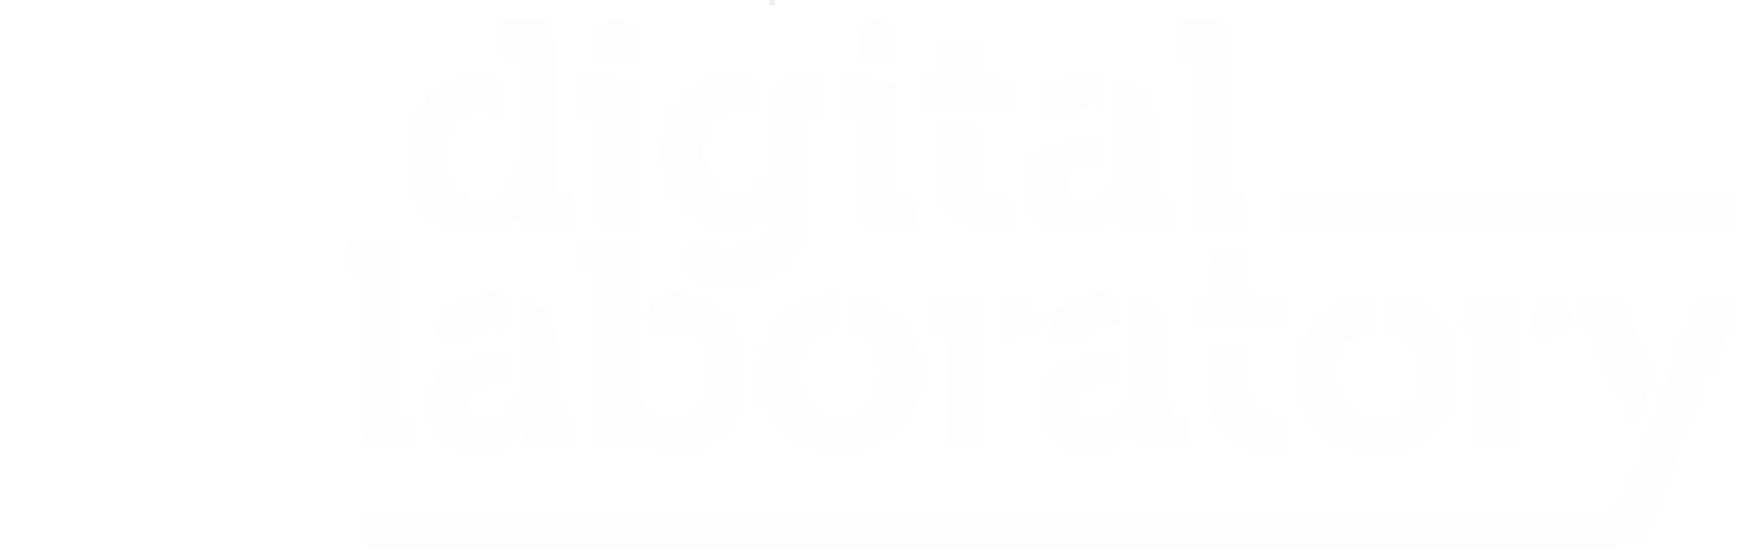 Digital lab logo